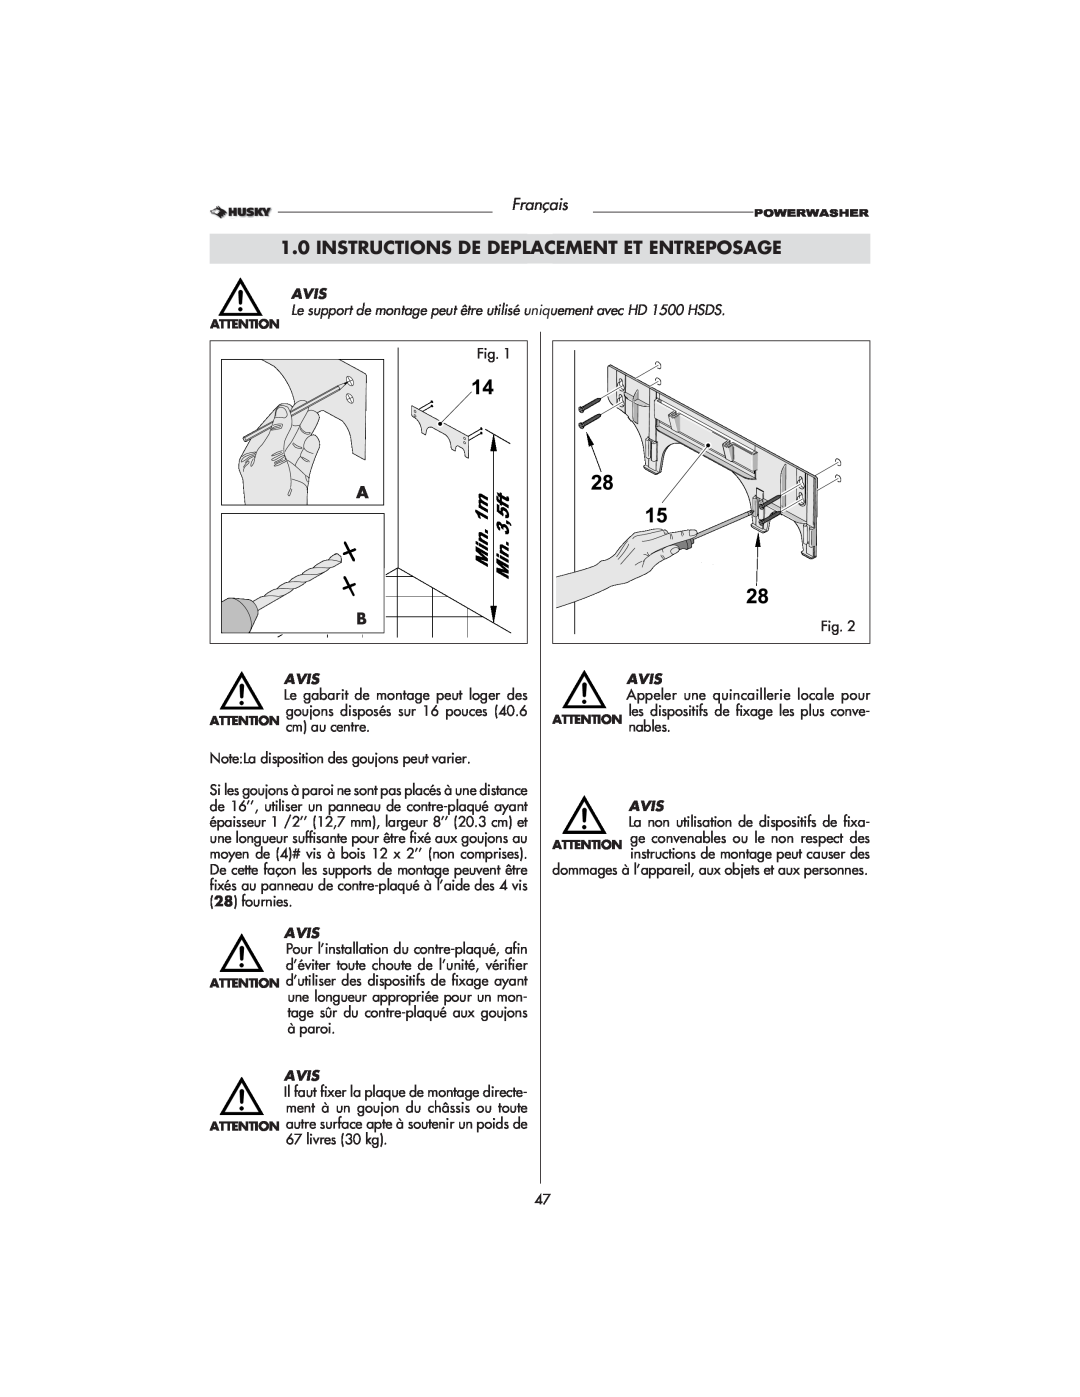 Husky HD1500 warranty Instructions De Deplacement Et Entreposage, Français, Avis, Fig 